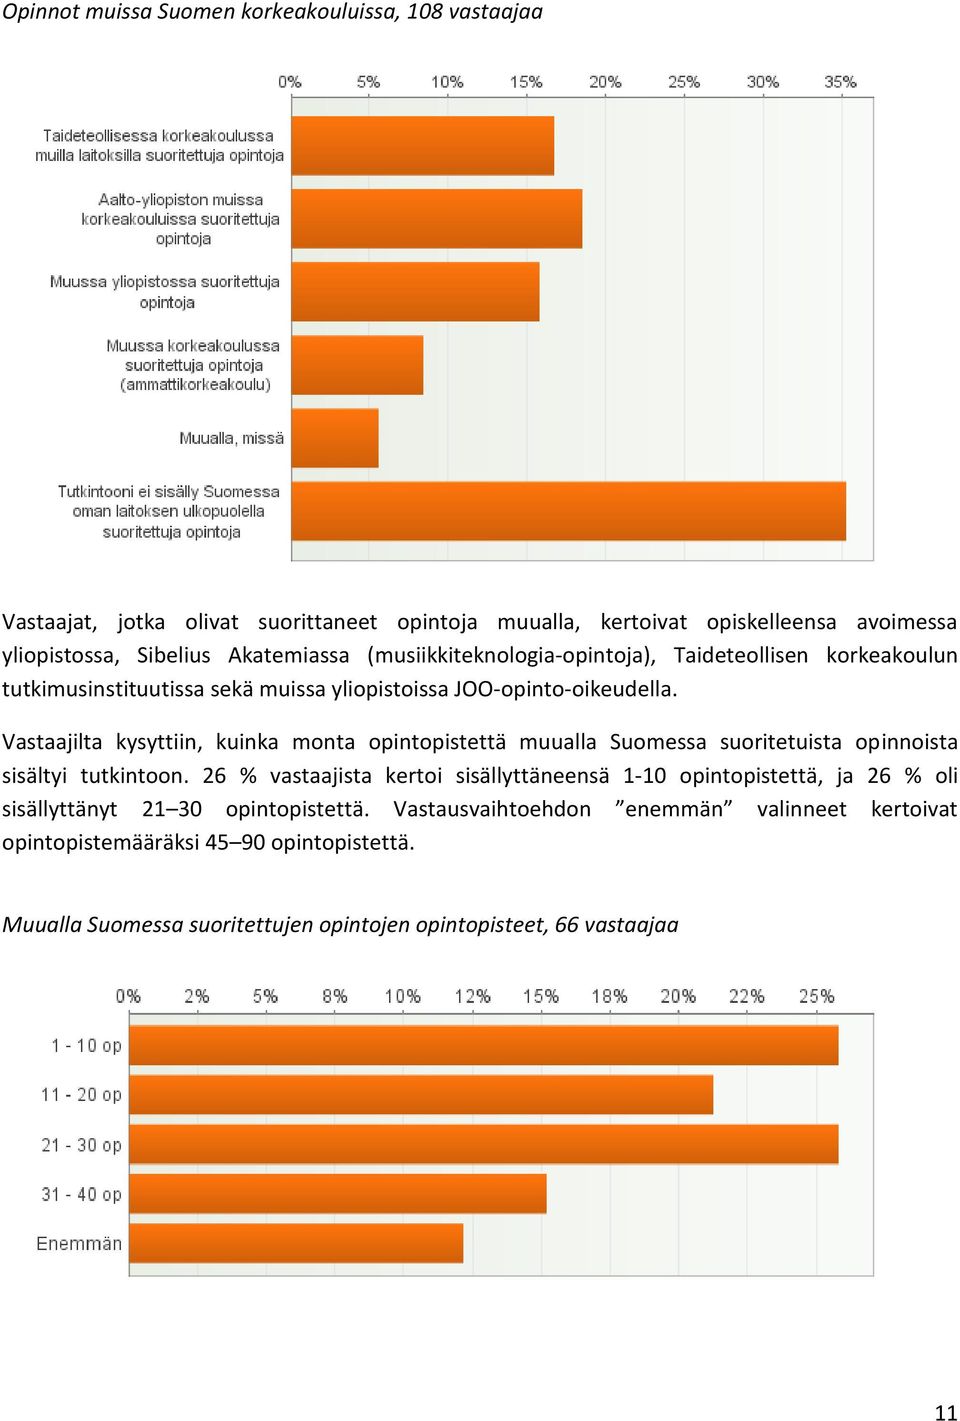 Vastaajilta kysyttiin, kuinka monta opintopistettä muualla Suomessa suoritetuista opinnoista sisältyi tutkintoon.